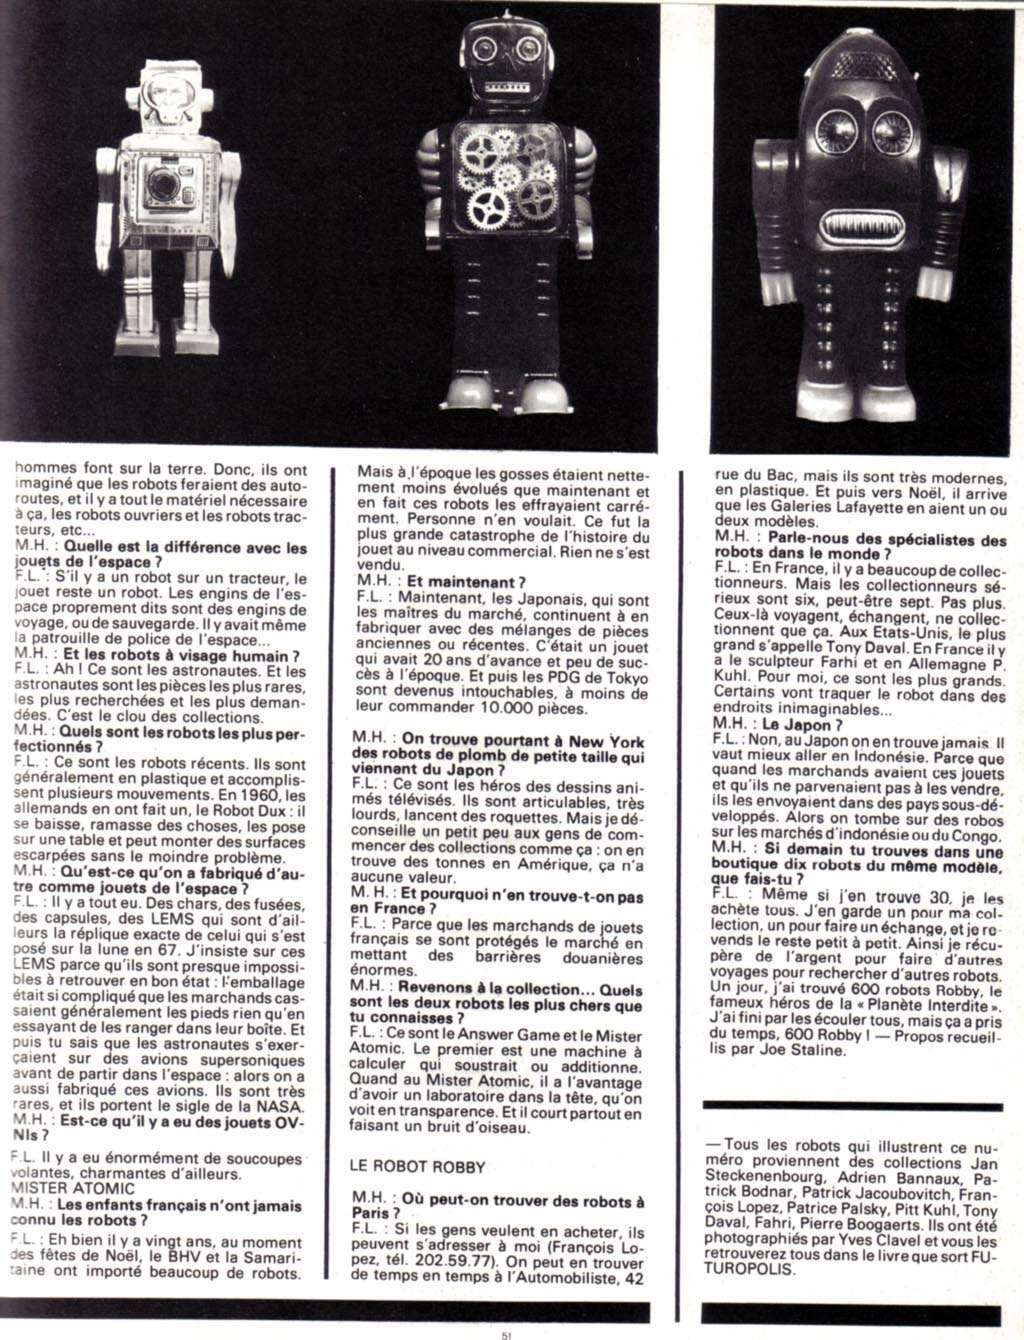 Collectionneur de robots dans Métal Hurlant (1978) Image14